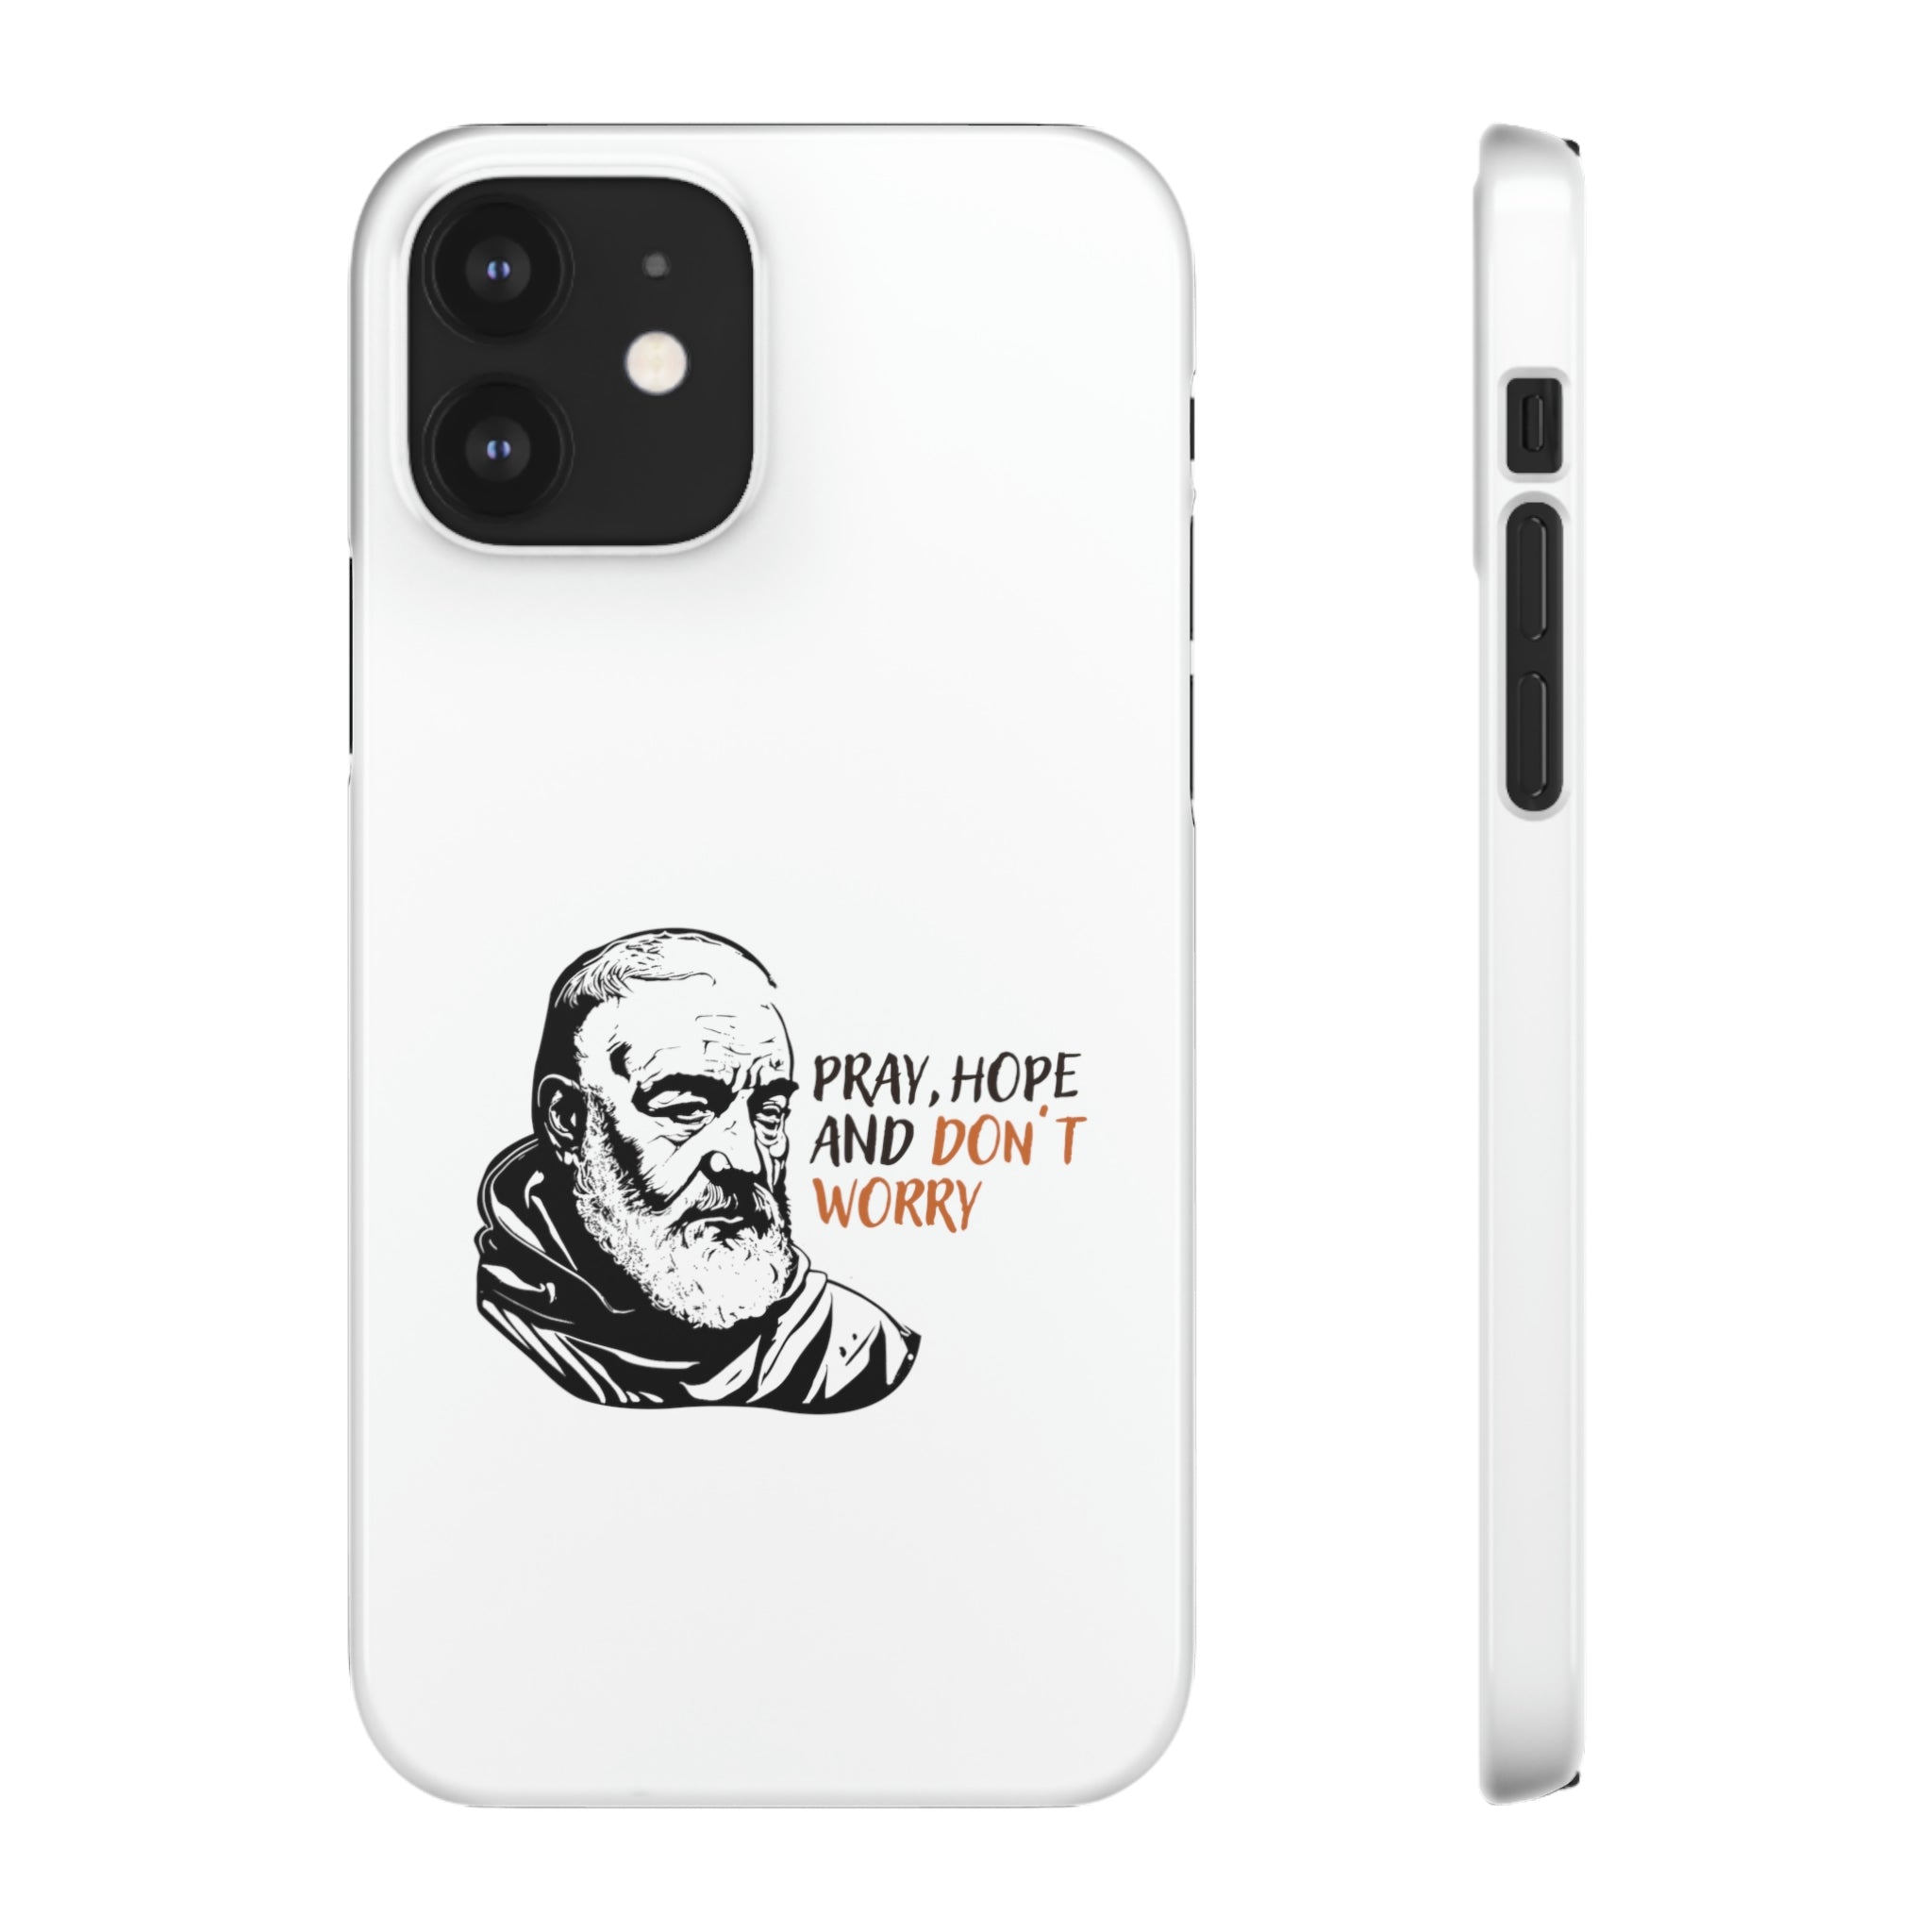 Padre Pio Phone Case